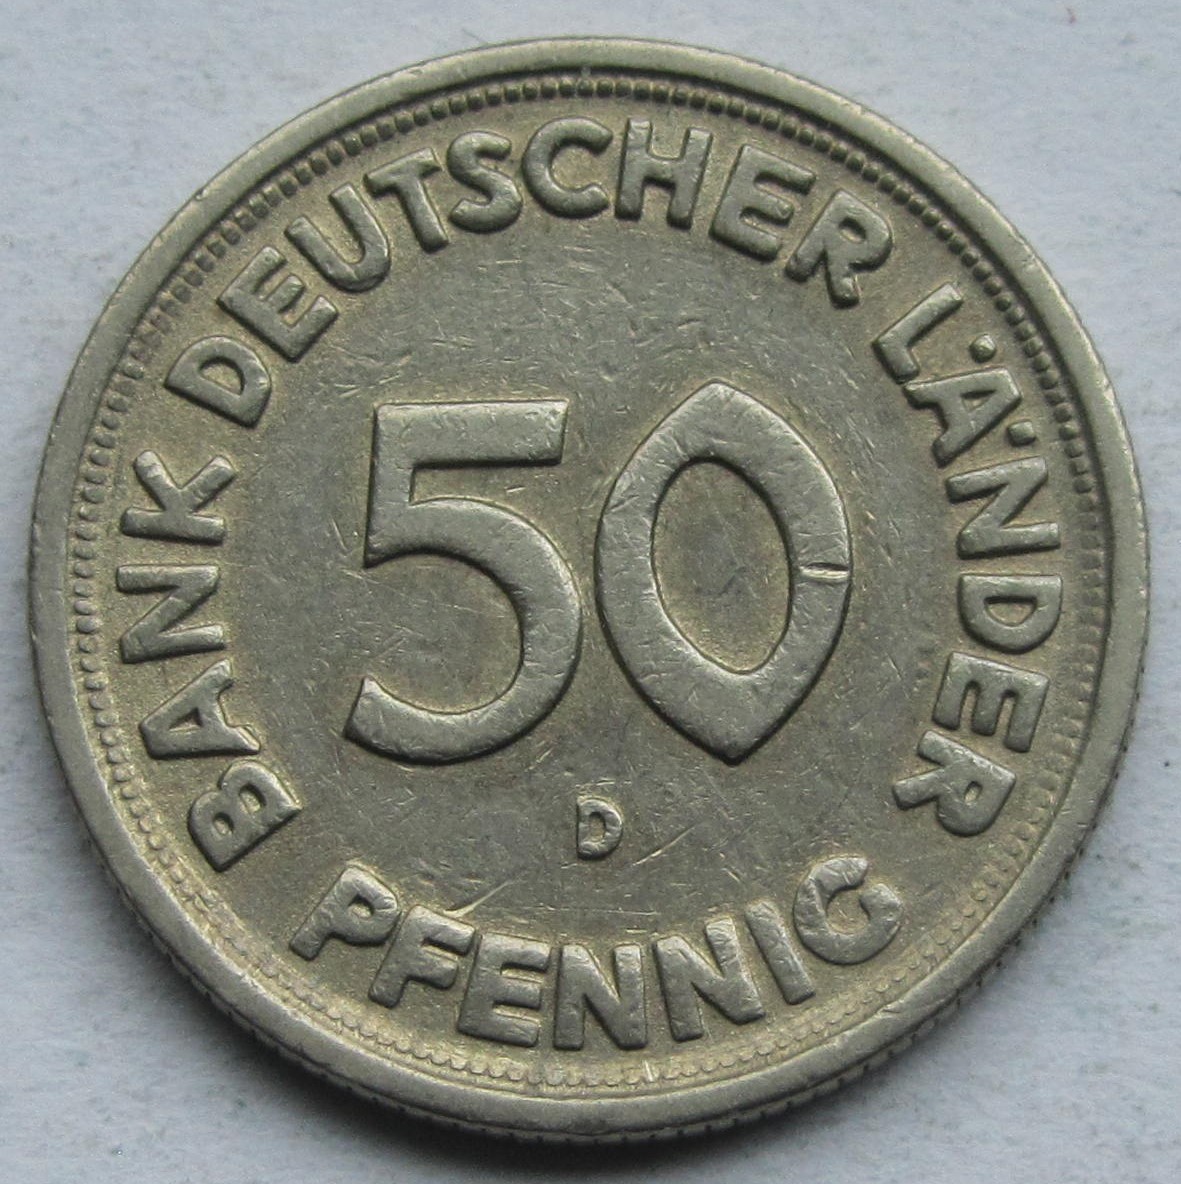  Deutschland: 50 Pfennig Bank deutscher Länder ohne Jahr (Stempelschwäche), D   